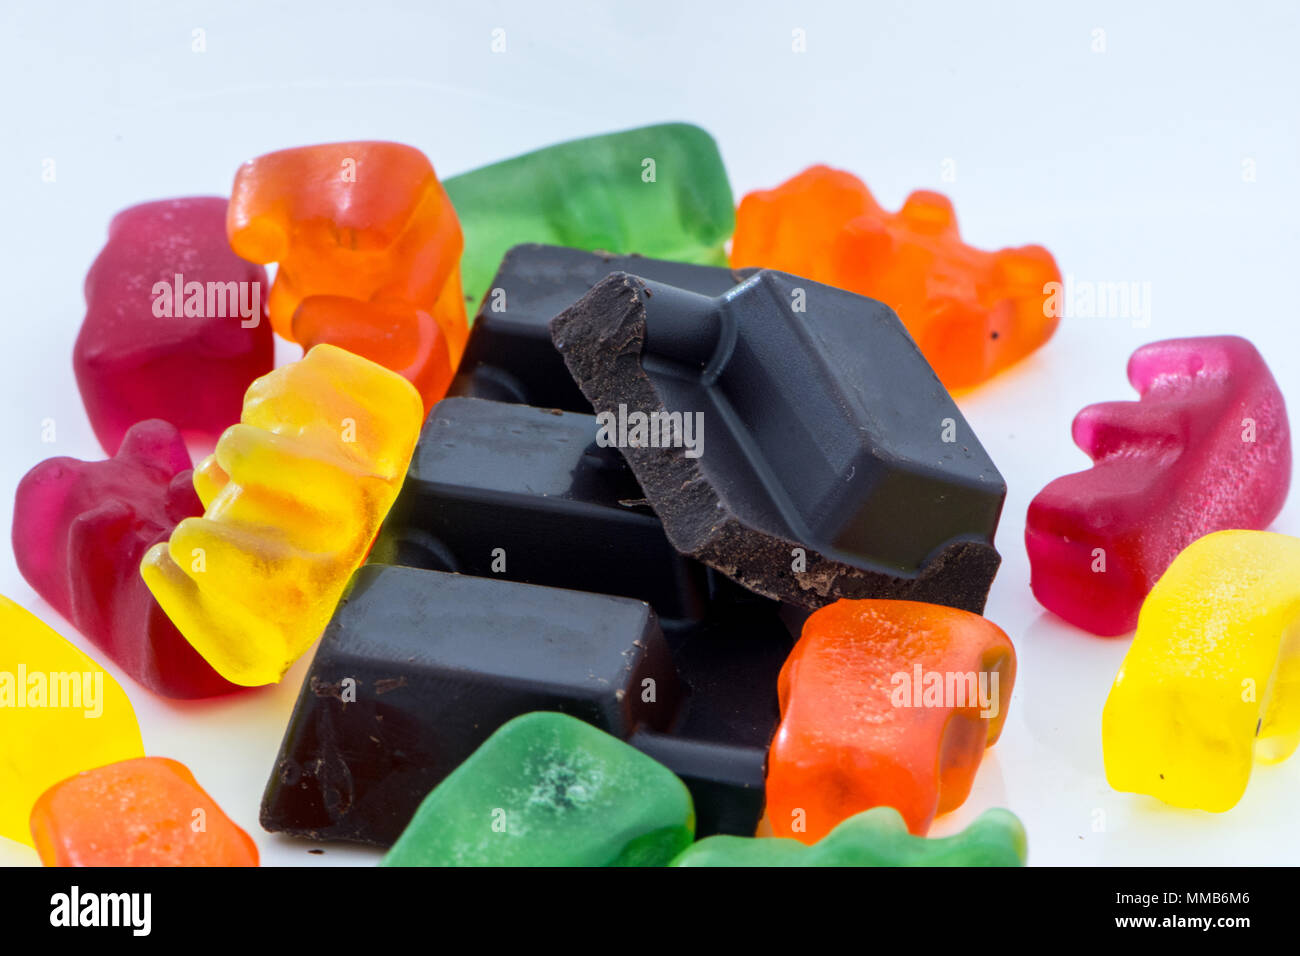 Scheibe der schwarze Schokolade in der Mitte der bunten Gummibärchen  Stockfotografie - Alamy